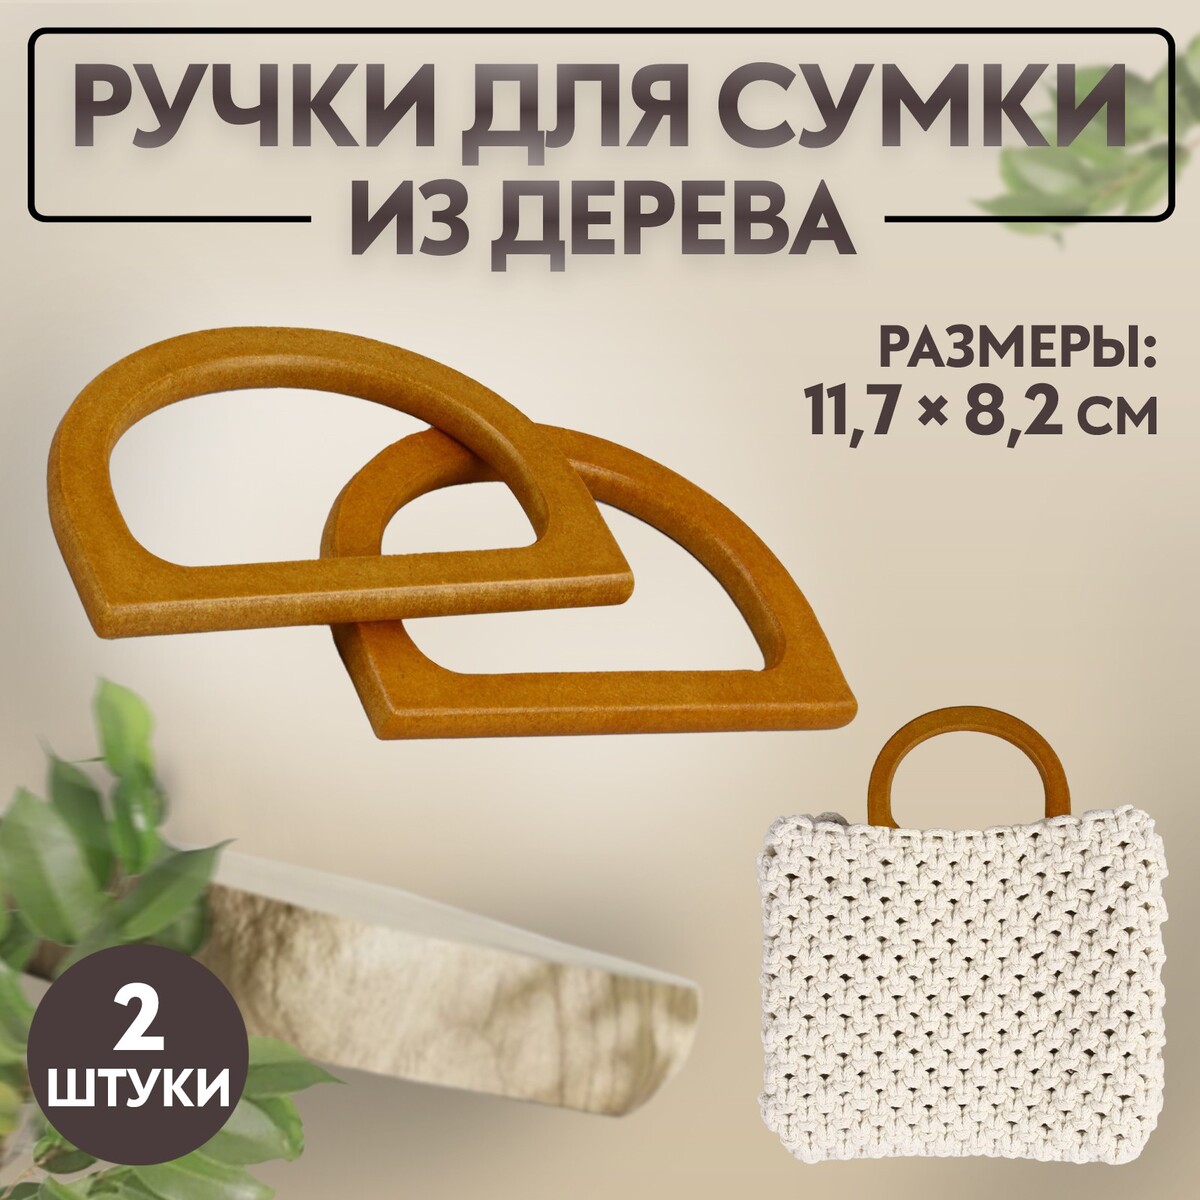 Ручки для сумки деревянные, 11,7 × 8,2 см, 2 шт, цвет коричневый ручки для сумки деревянные 15 × 8 см 2 шт светло коричневый